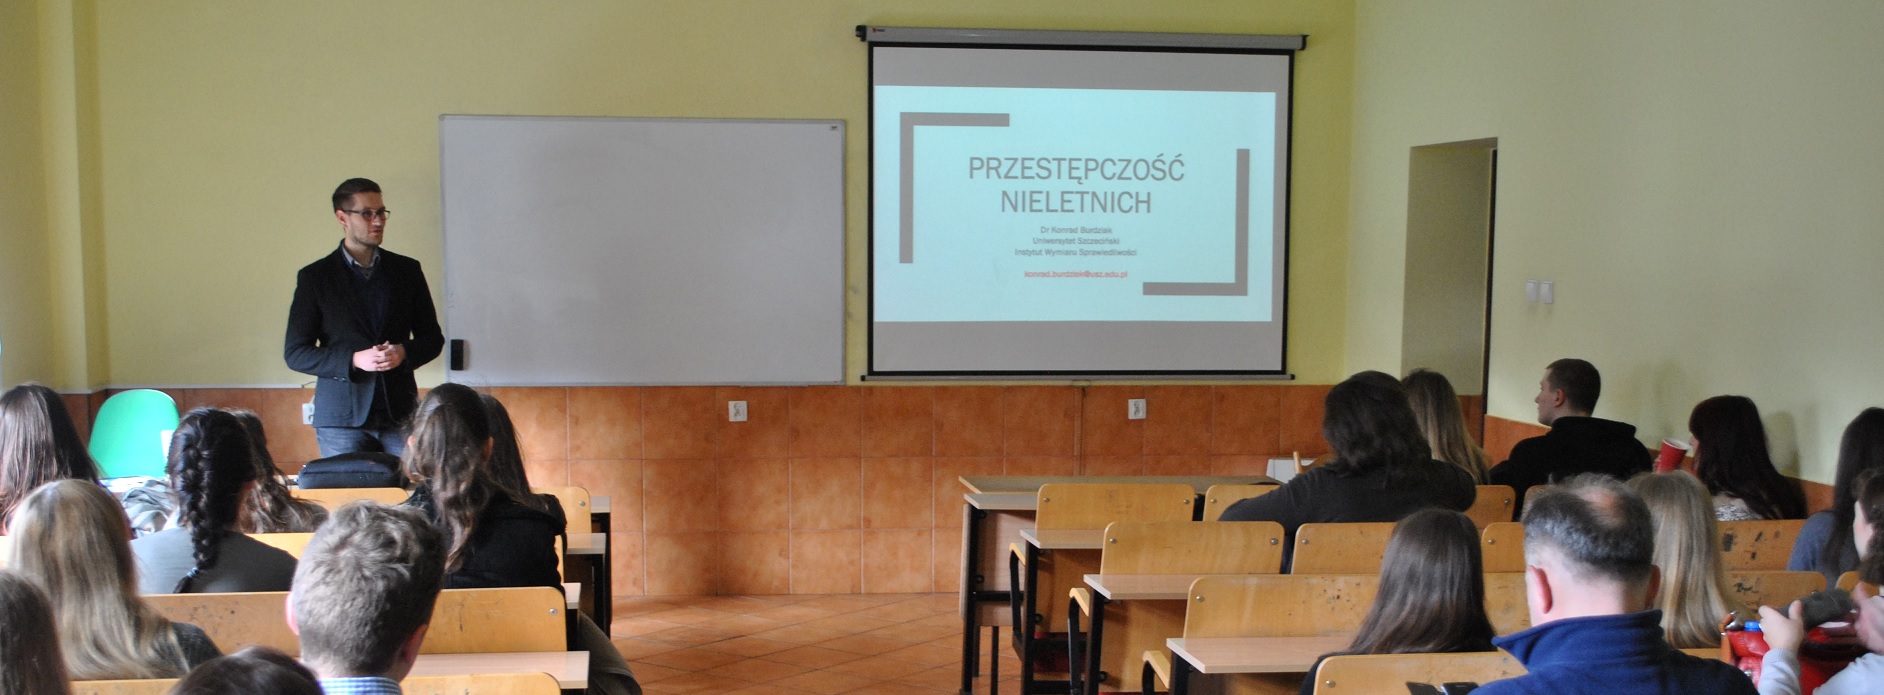 Spotkanie z uczniami LO w Szczecińskiej Szkole Florystycznej w Szczecinie – „Przestępczość nieletnich”